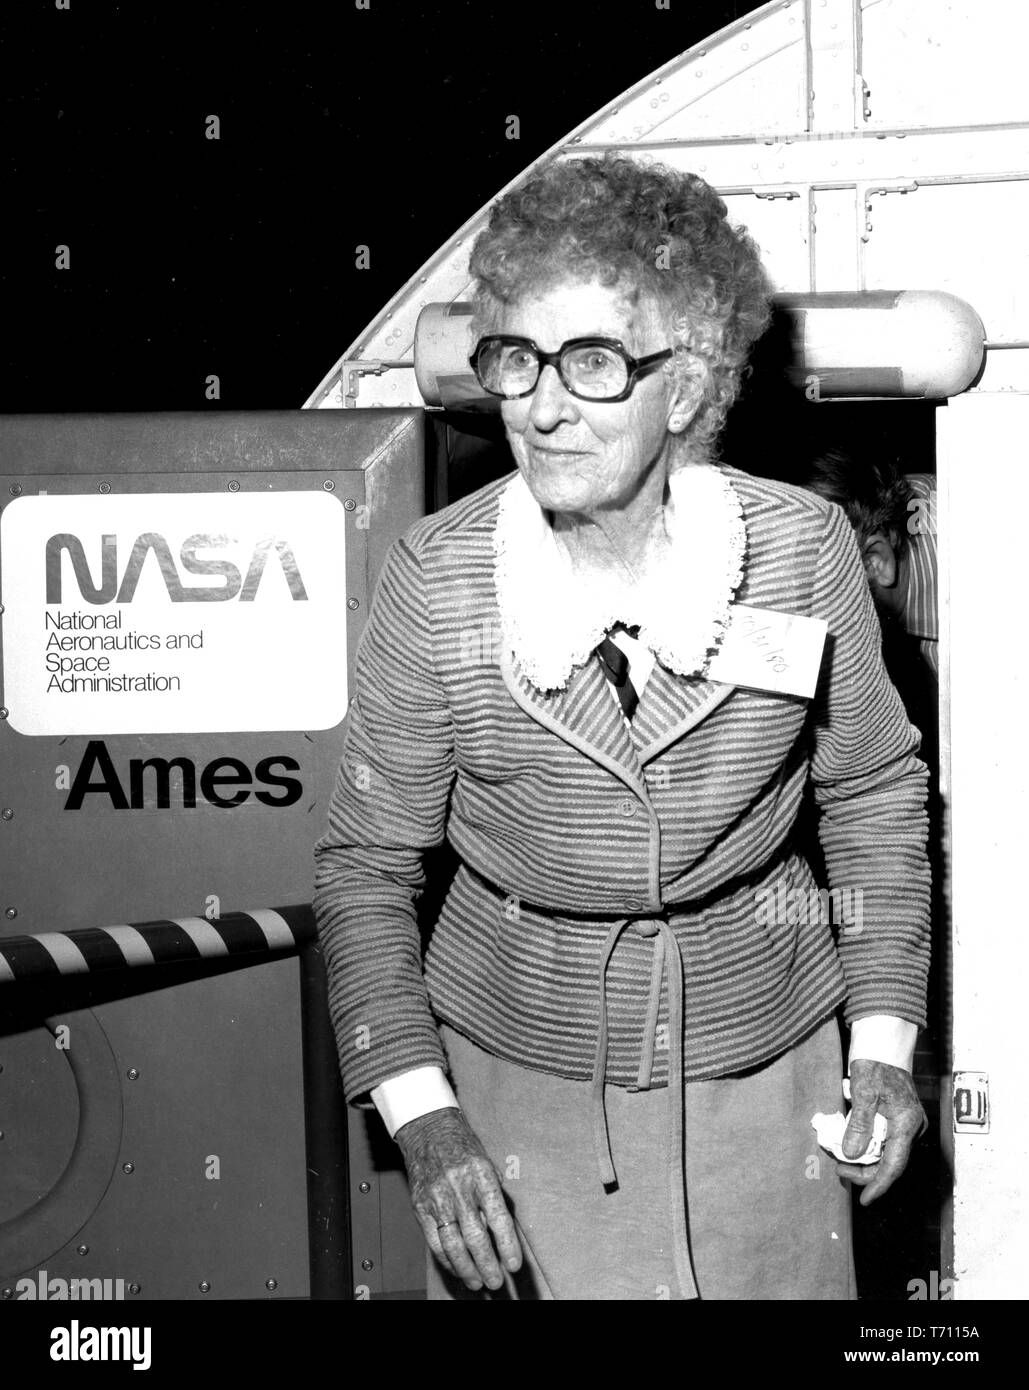 Neta Snook Südlichen, Pilot und Ausbilder zu Amelia Earhart, ergibt sich aus der Flight Simulator für Fortgeschrittene Flugzeuge am Ames Research Center, Moffett Federal Airfield, Kalifornien, 31. Oktober 1980. Mit freundlicher Genehmigung der Nationalen Luft- und Raumfahrtbehörde (NASA). () Stockfoto